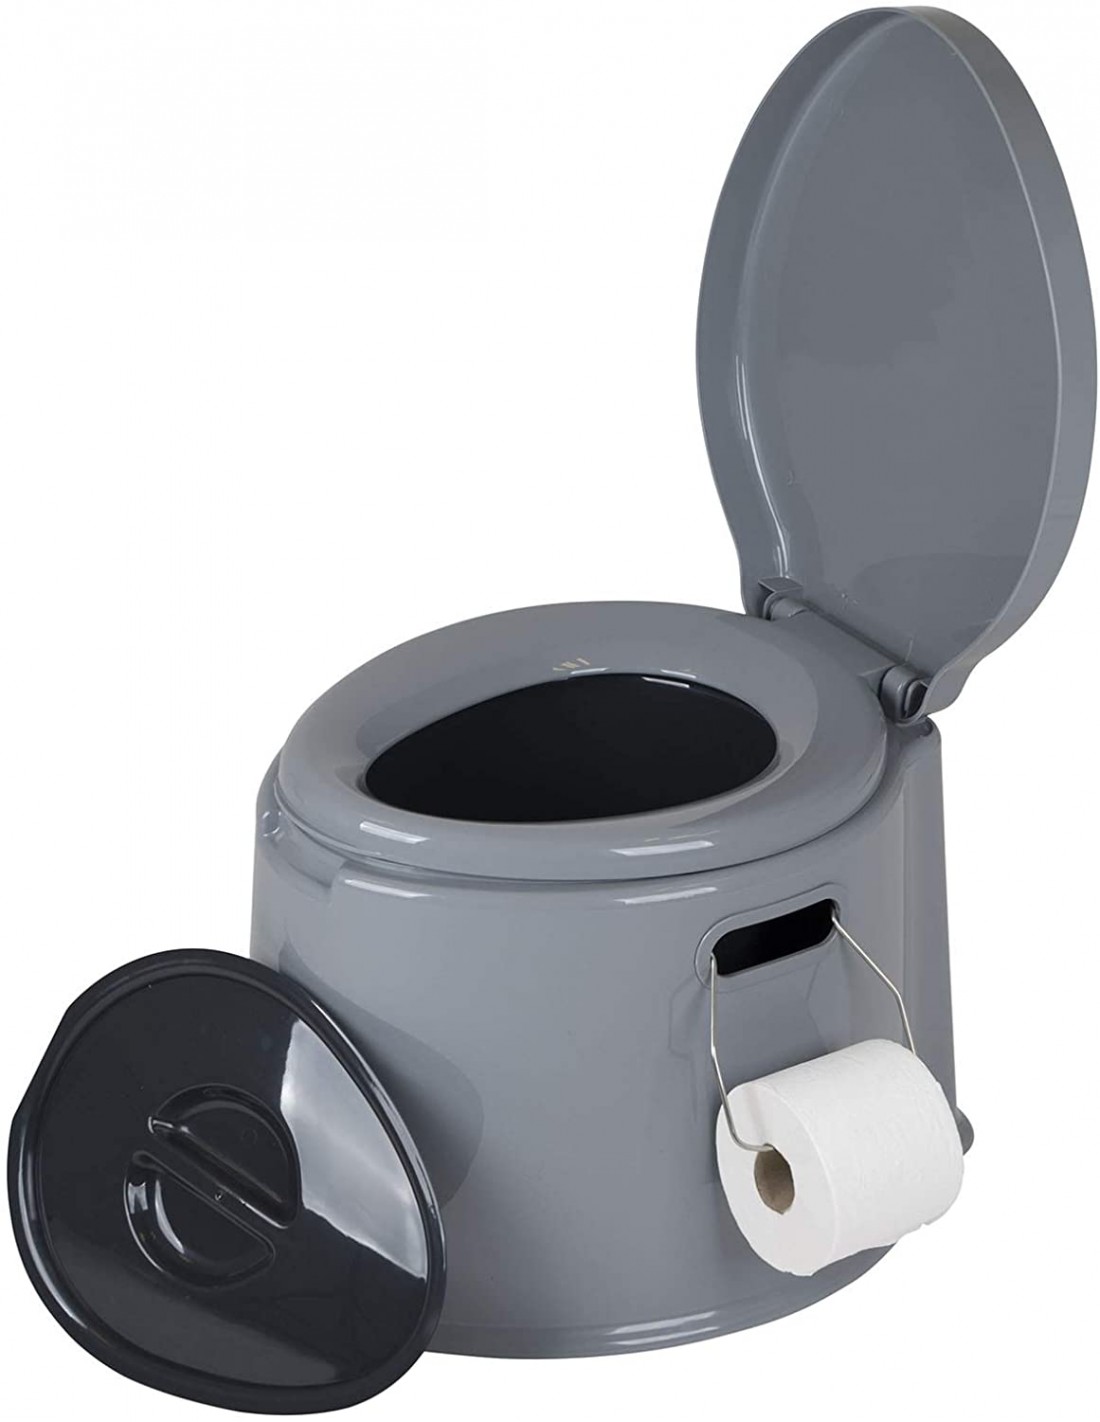 https://vidacampista.com/17051-thickbox_default/bo-camp-tragbare-7-liter-toilette-mit-sitz.jpg